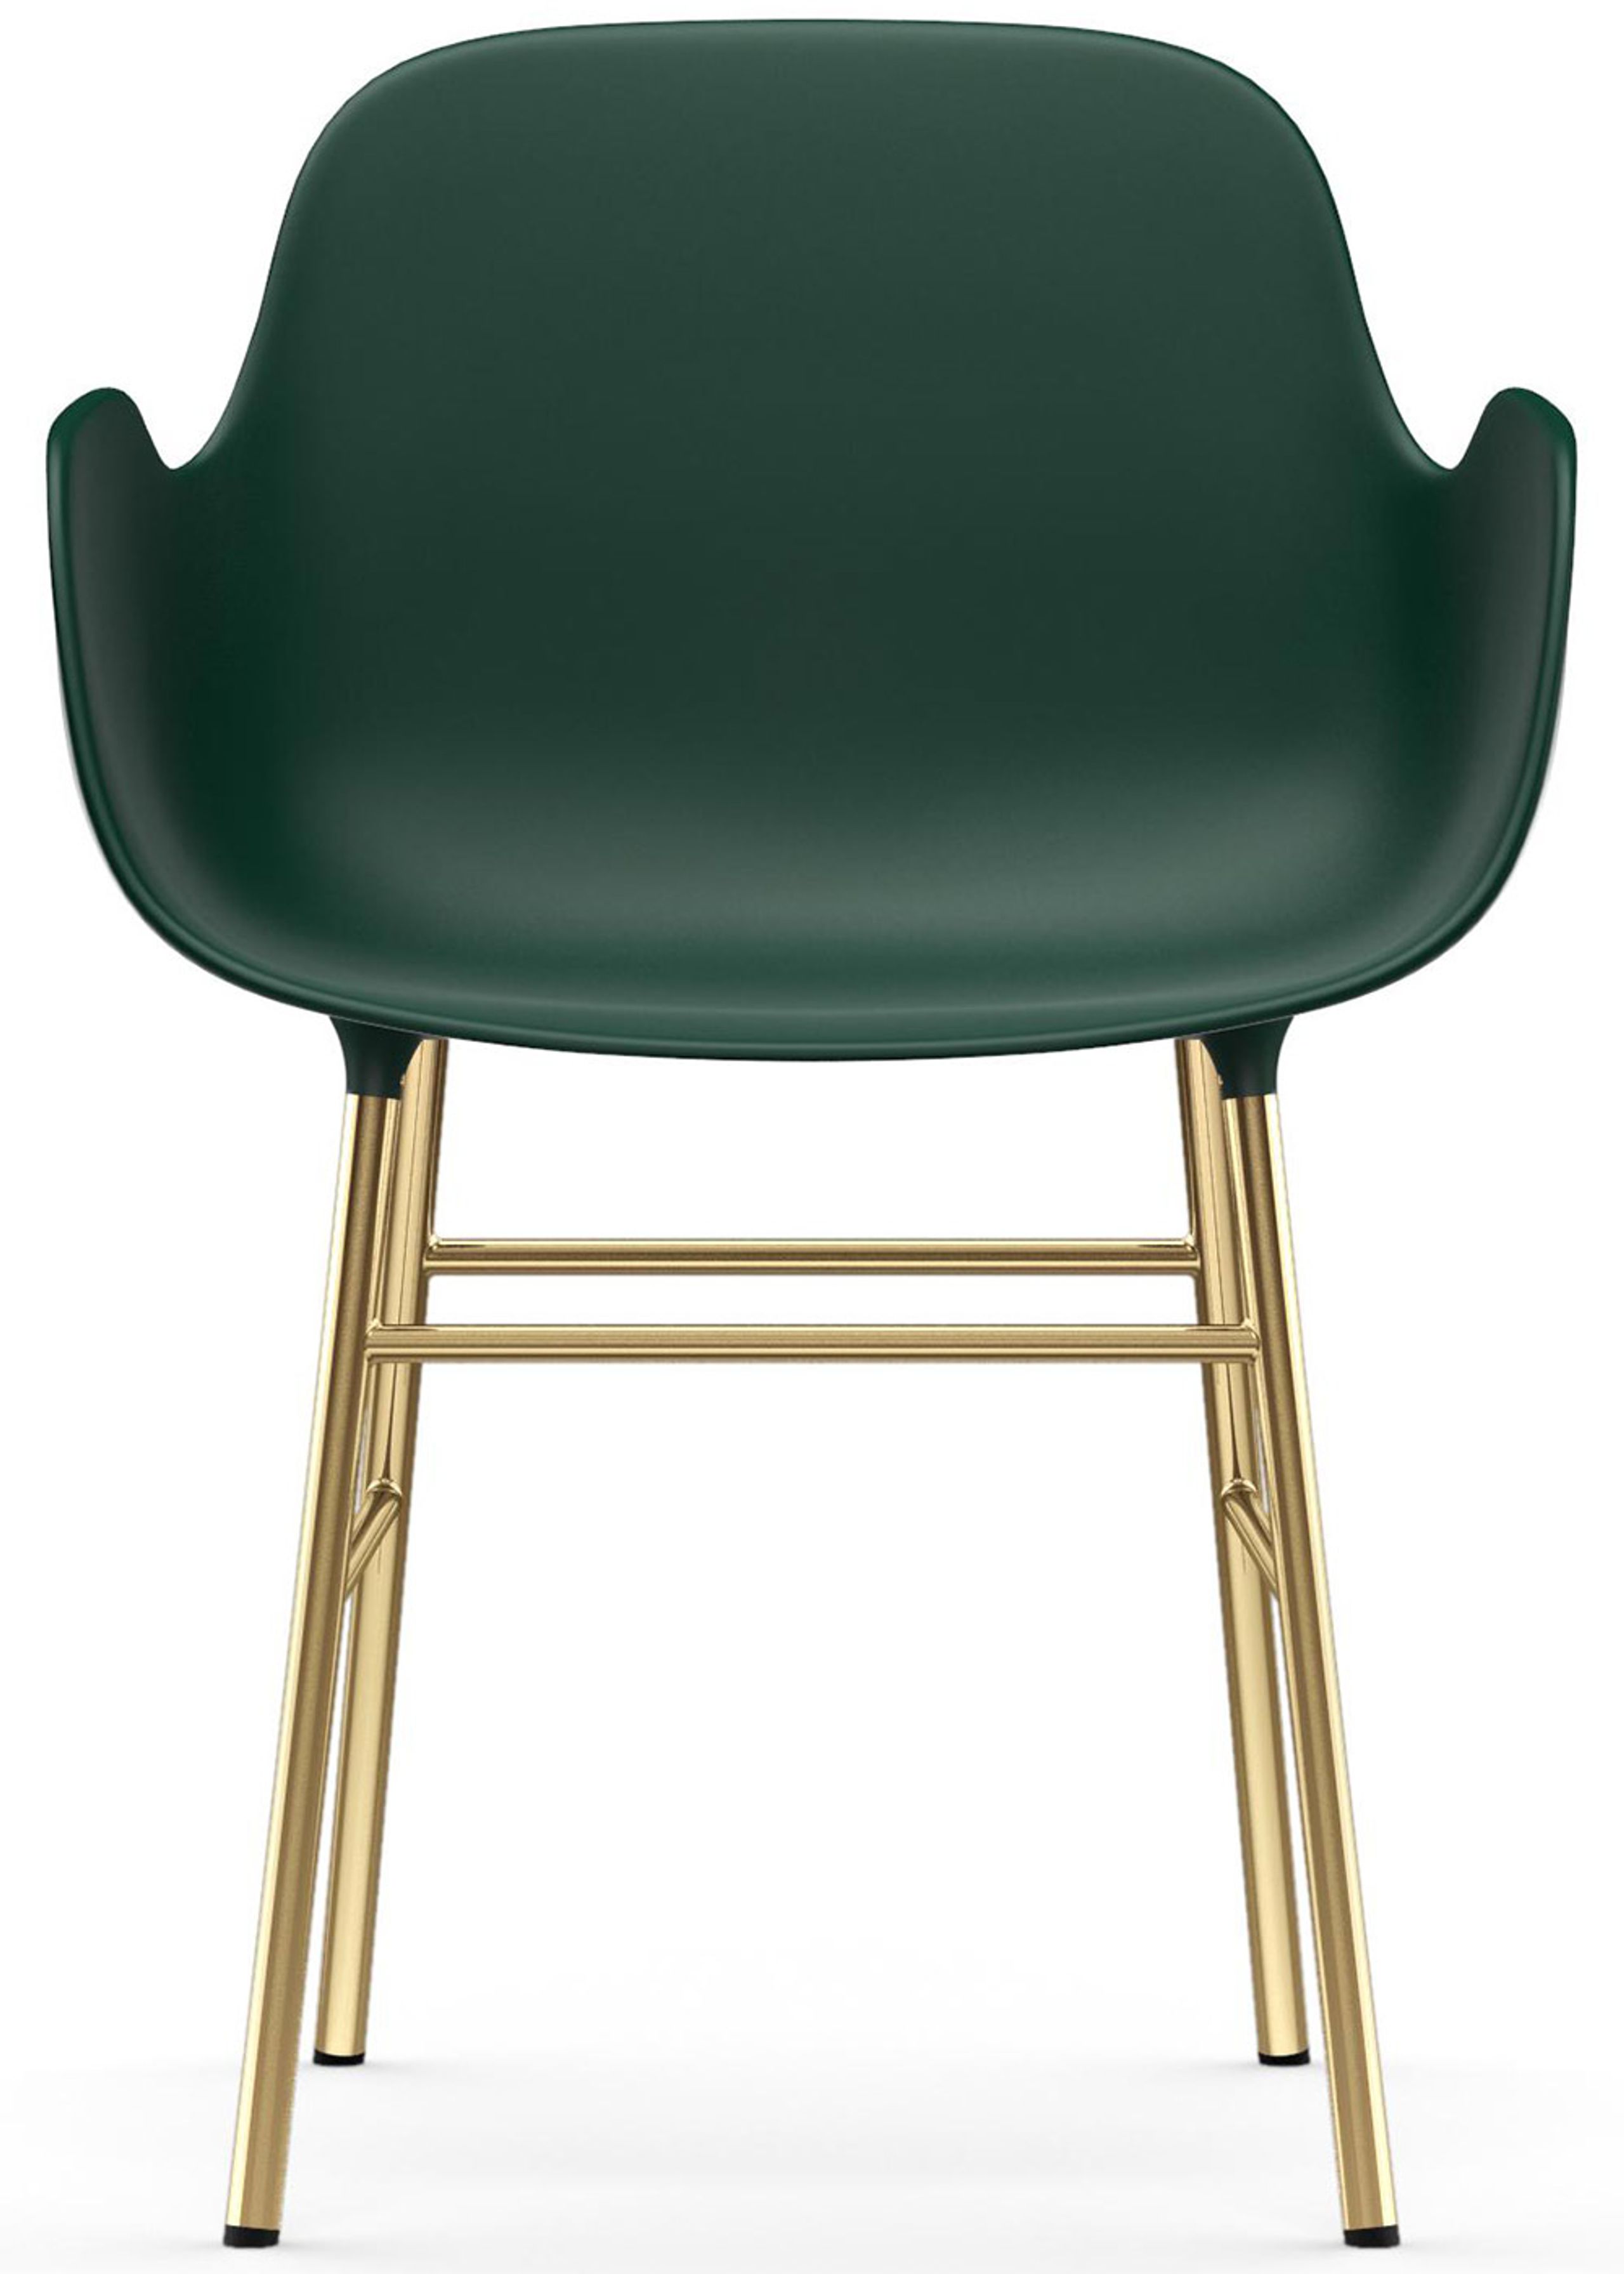 Normann Copenhagen - Fauteuil - Form Armchair - Steel, Chrome & Brass - Brass / Green